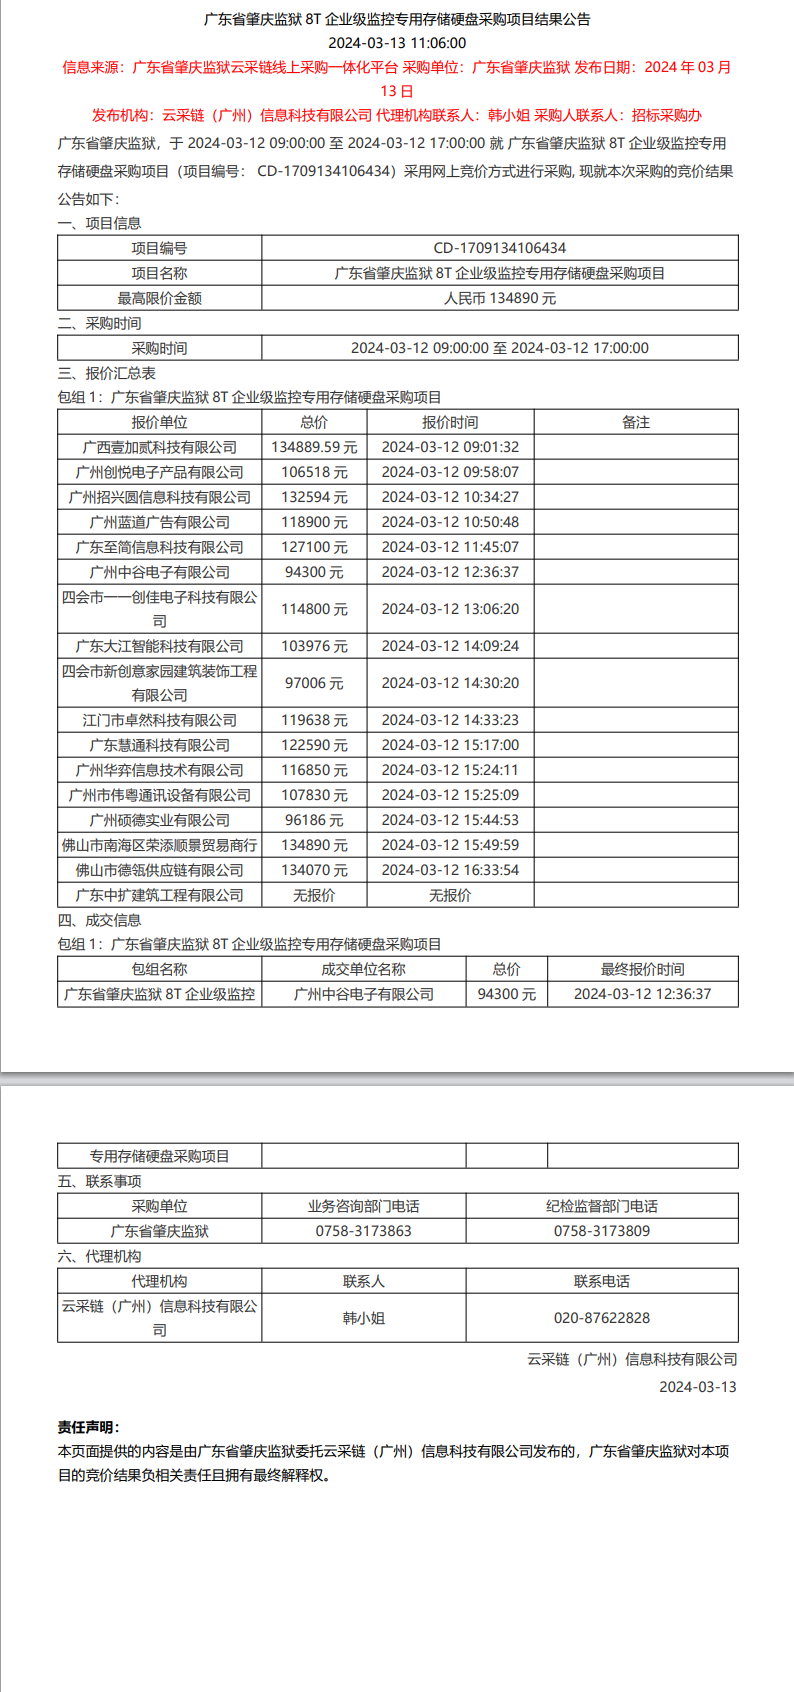 广东省肇庆监狱8T企业级监控专用存储硬盘采购项目结果公告.png